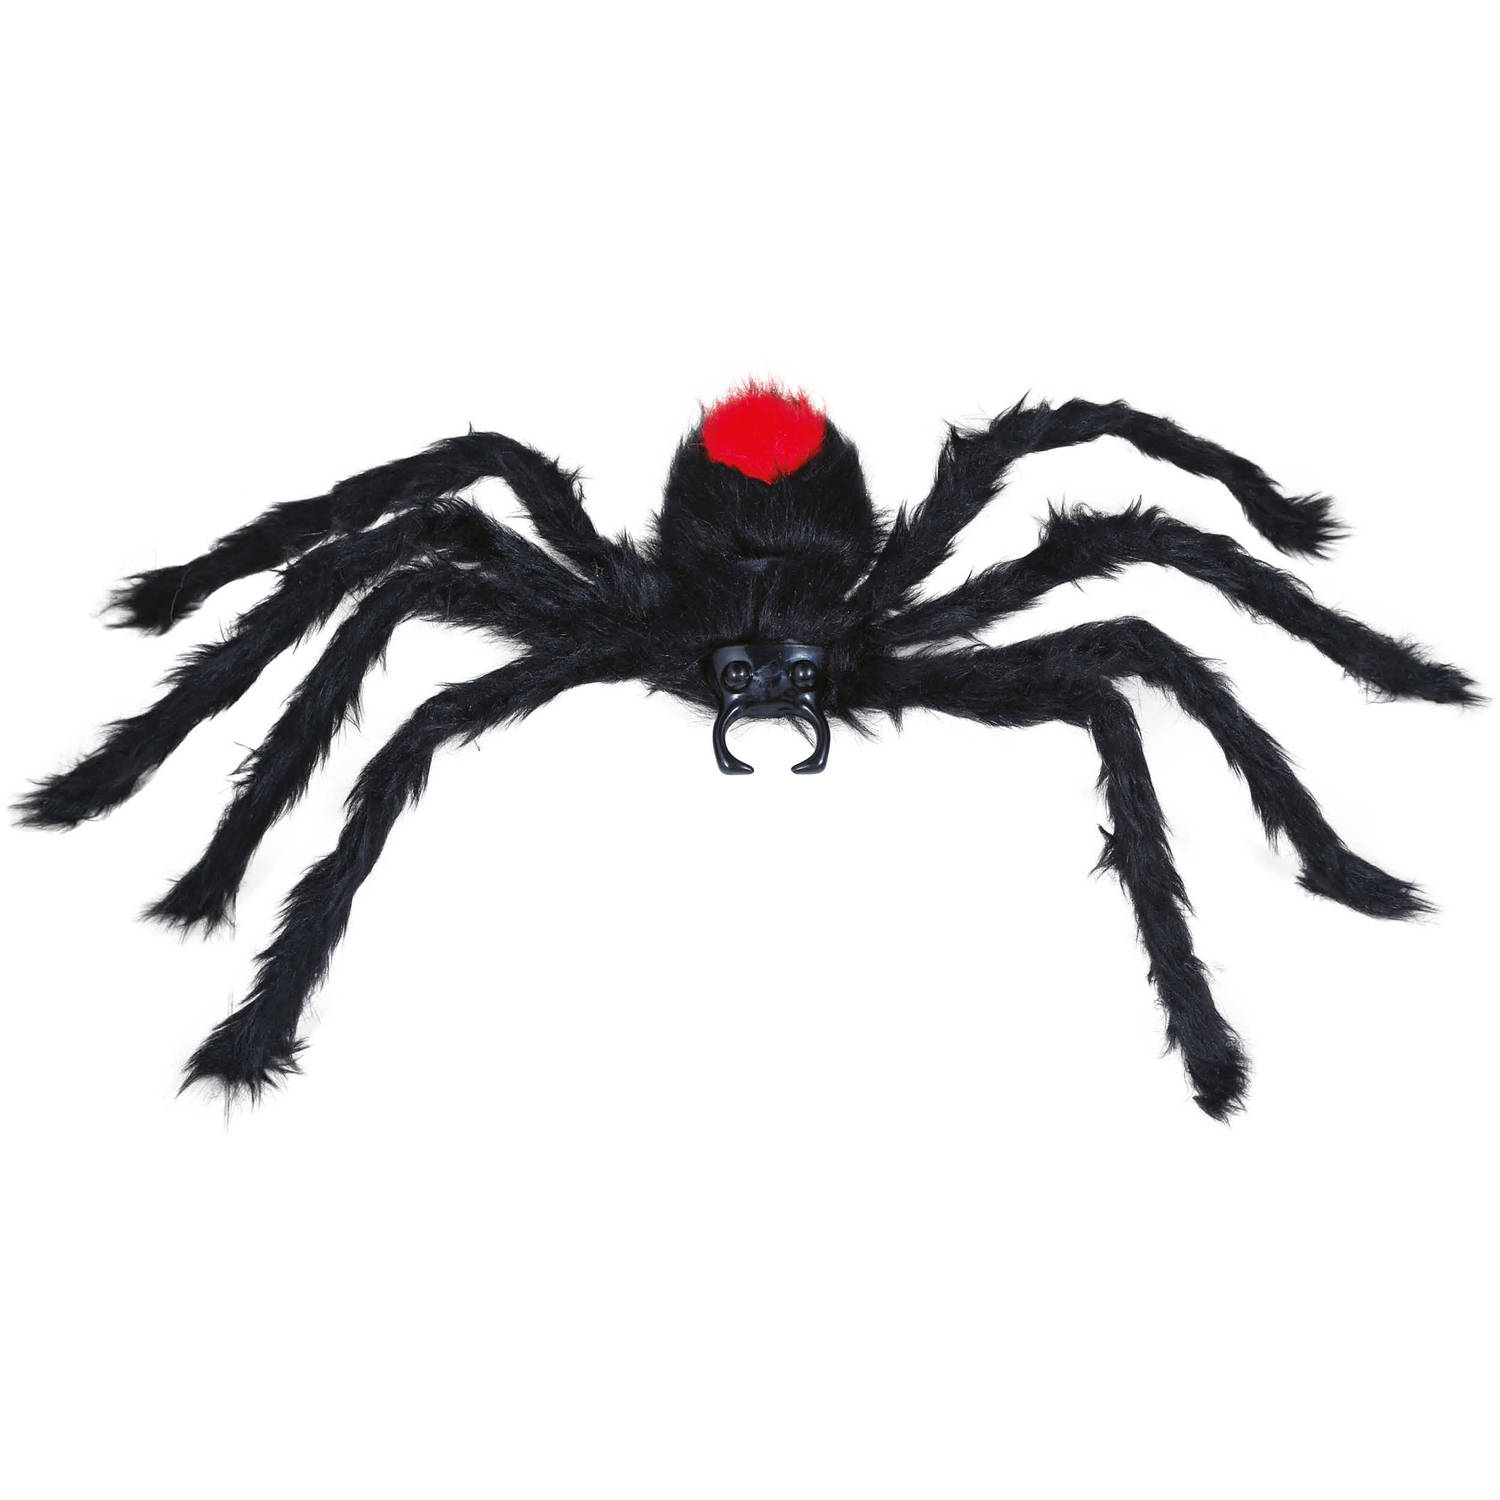 Fiestas Horror spin groot - Halloween decoratie/versiering - zwart - 60 cm- Griezelige thema accessoires